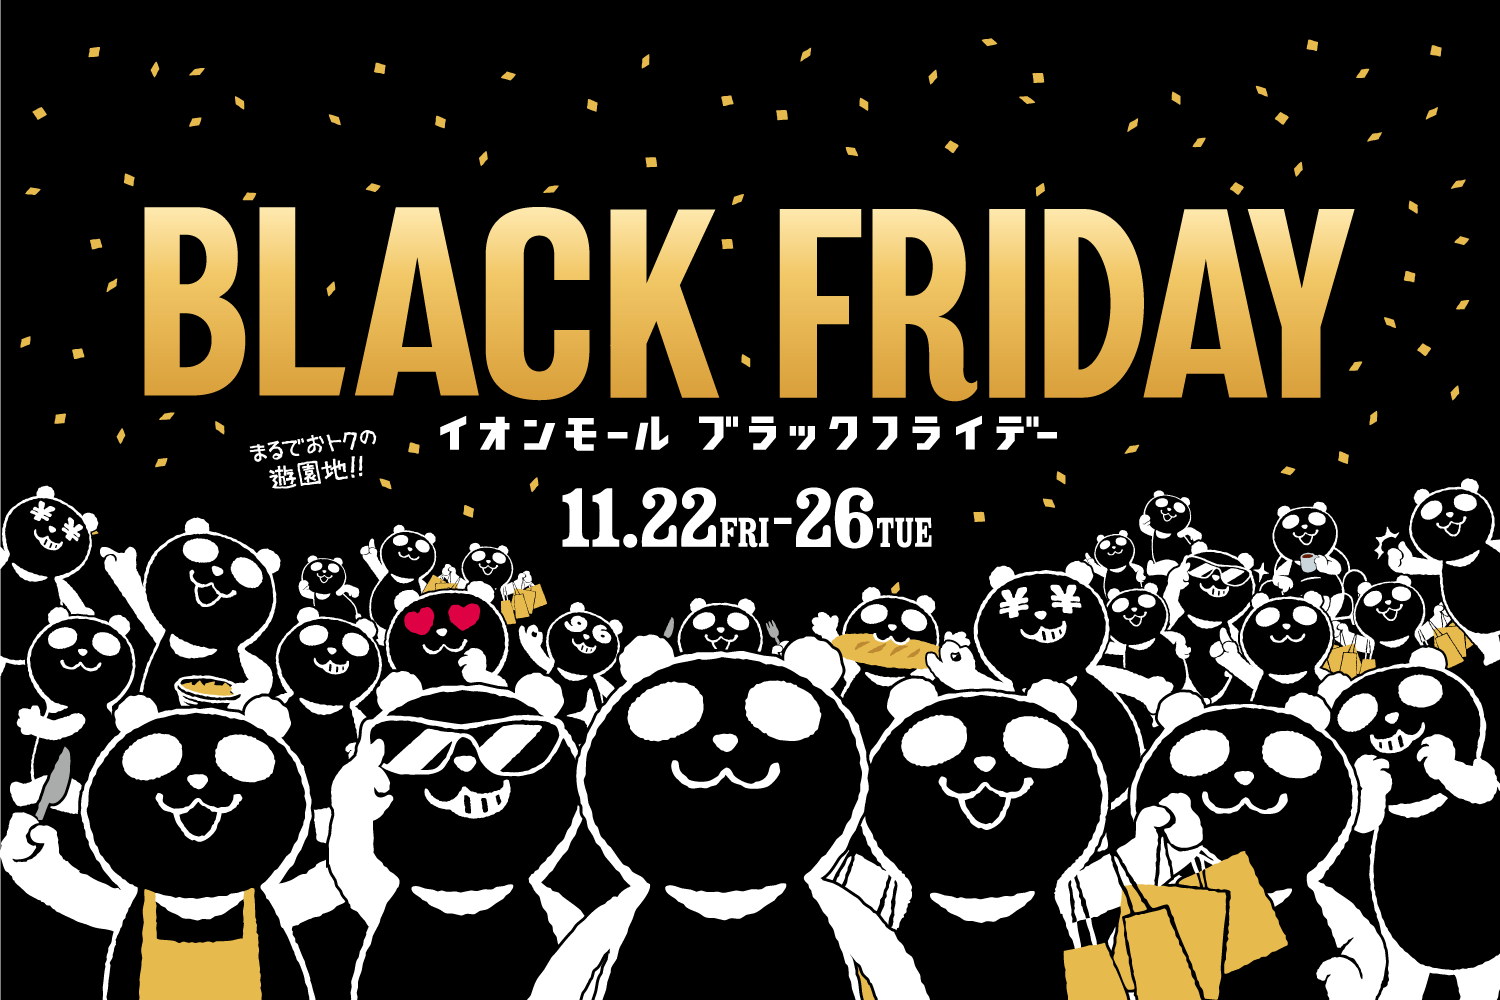 *-BLACK FRIDAY- 特別フェア開催のお知らせ ブラックフライデーとは・・・？ 11月の第4木曜日（感謝祭）の翌日にあたる日。 欧米では小売店などで大規模な安売りが実施され、買い物客が殺到して小売店が繁盛することで知られ1年で最も売り上げを見込める日とされており日本でも近年このタイミングで […]